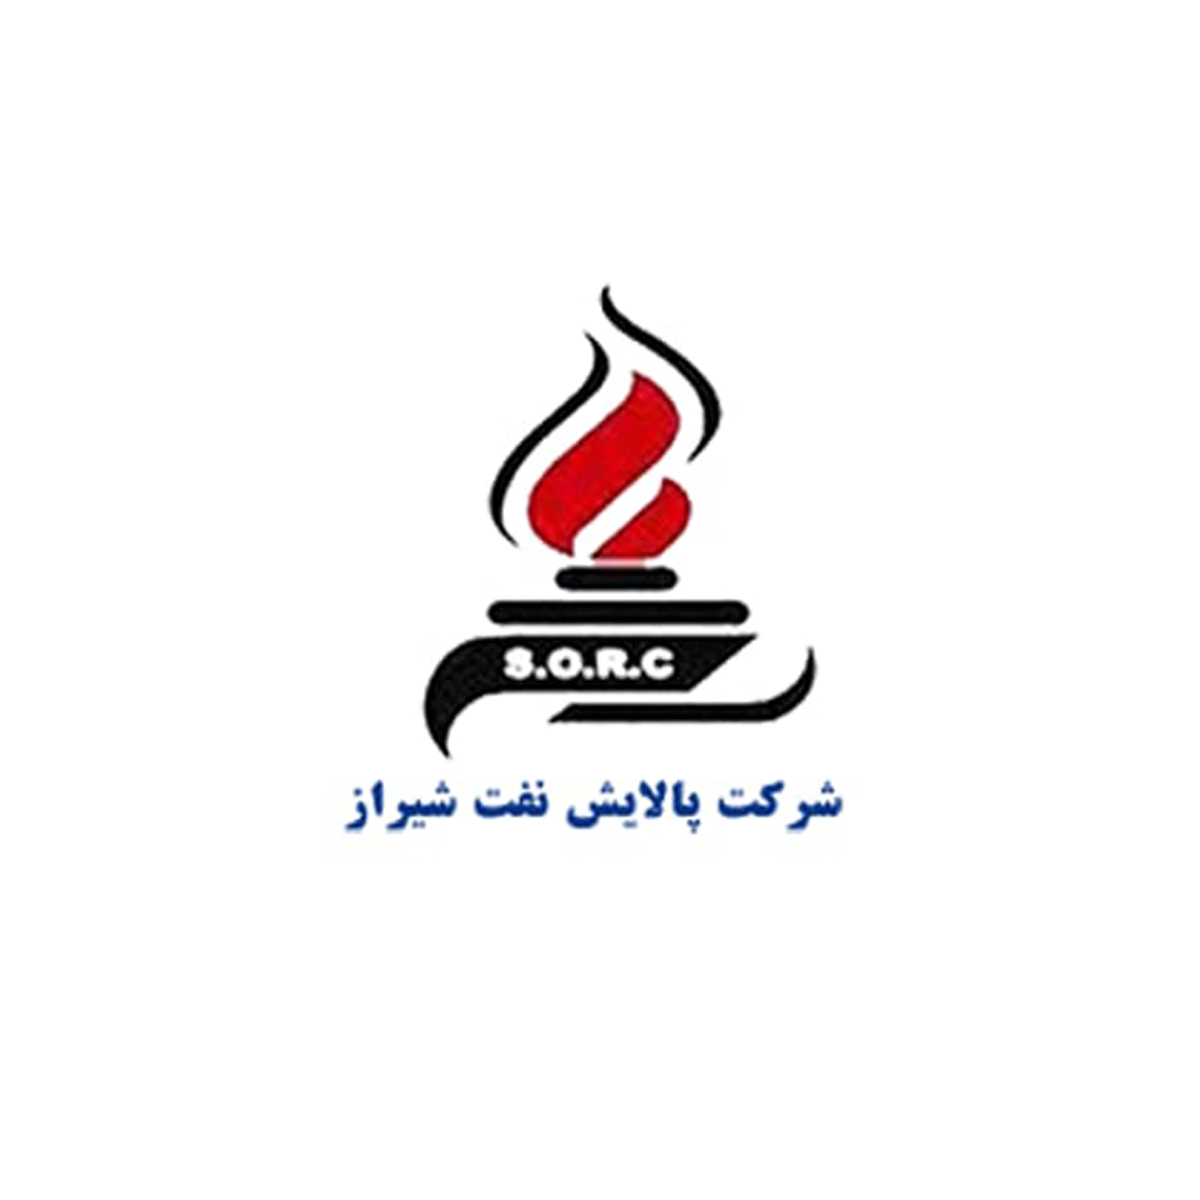 پالایش نفت شیراز : تایپ توضیحات کوتاه برند در اینجا.